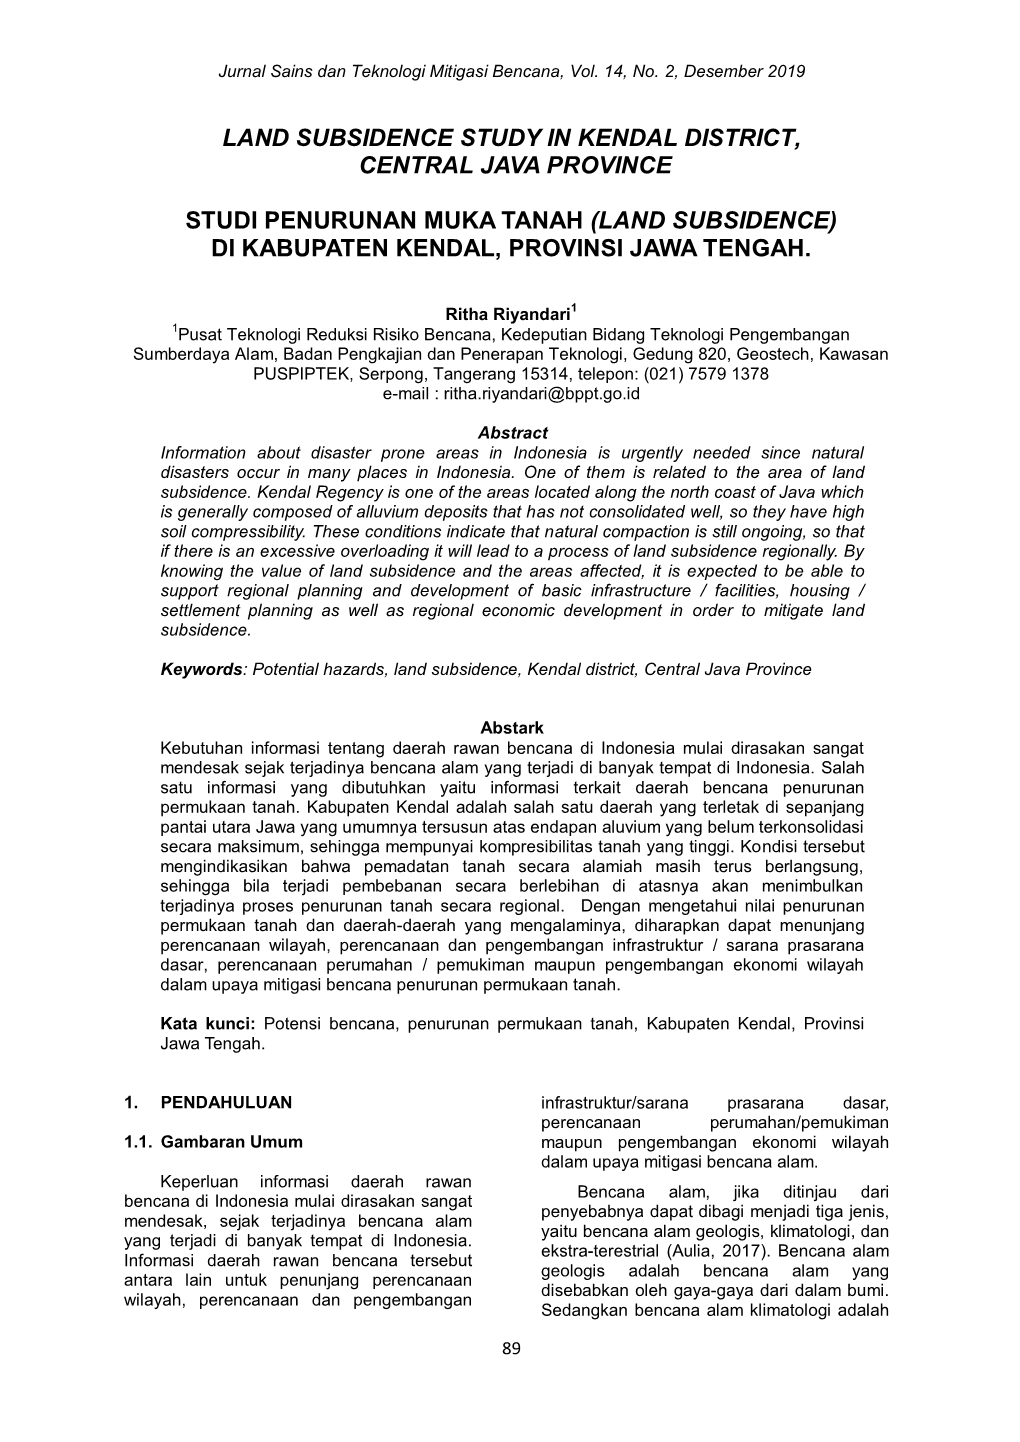 Land Subsidence Study in Kendal District, Central Java Province Studi Penurunan Muka Tanah